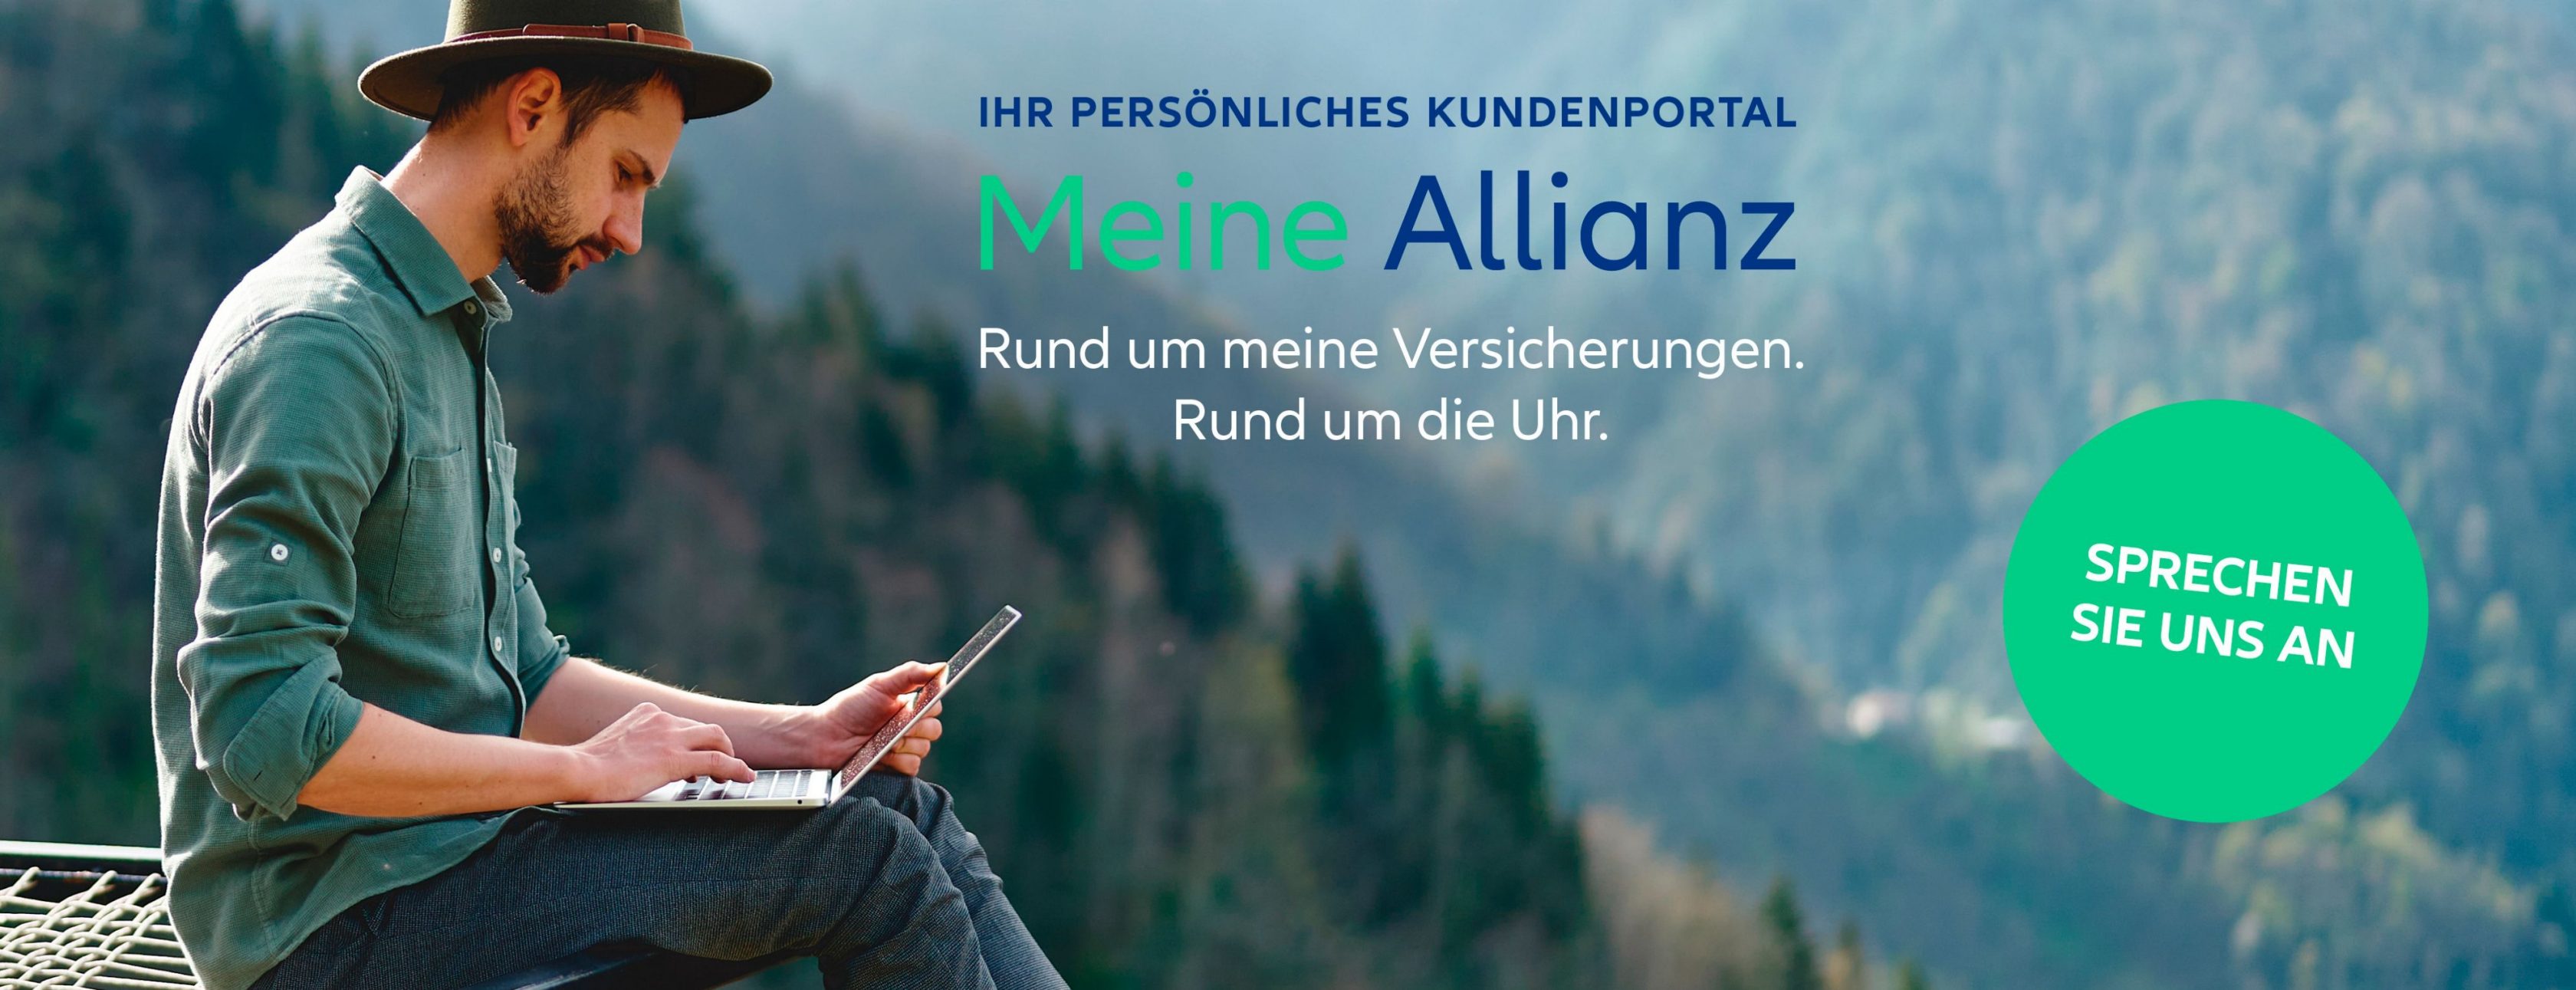 Allianz Versicherung Sebastian Vester Pirmasens - Günstige Autoversicherung Geld sparen Pirmasens